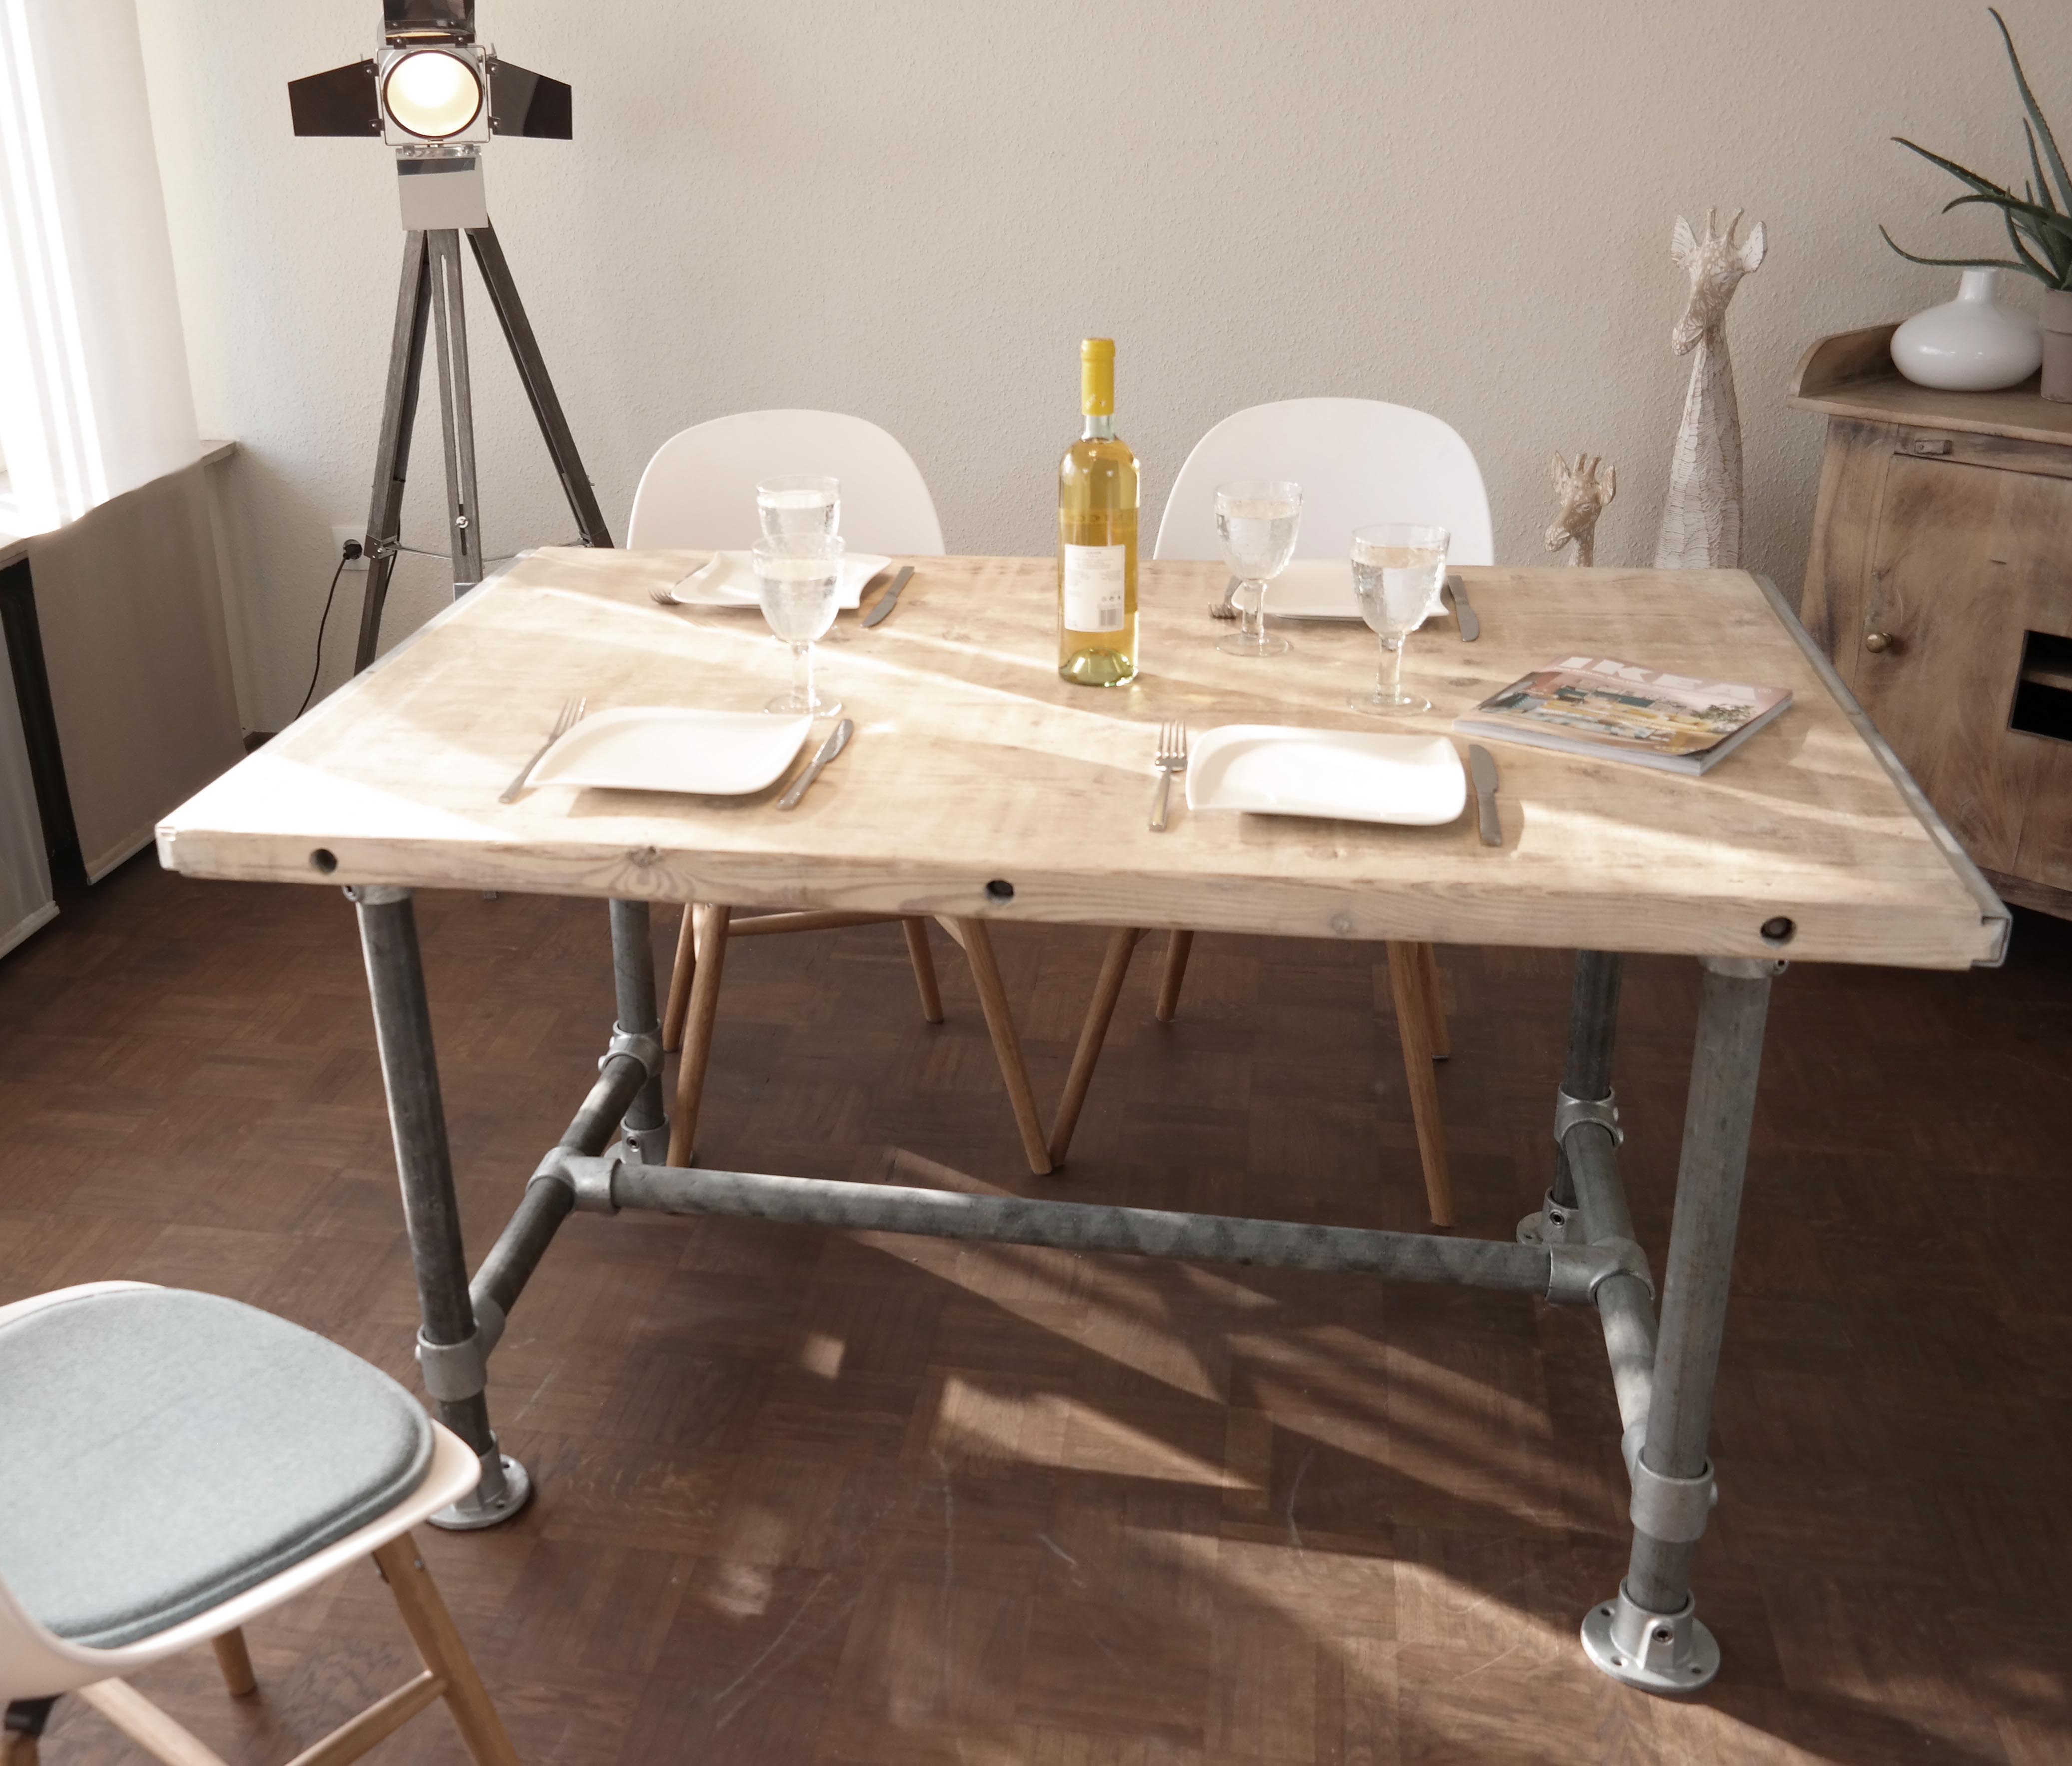 Tisch Industrie Stil Modell Paris 140x95 Massiv Modern Neu Gerüst Holz Esstisch Gartentisch